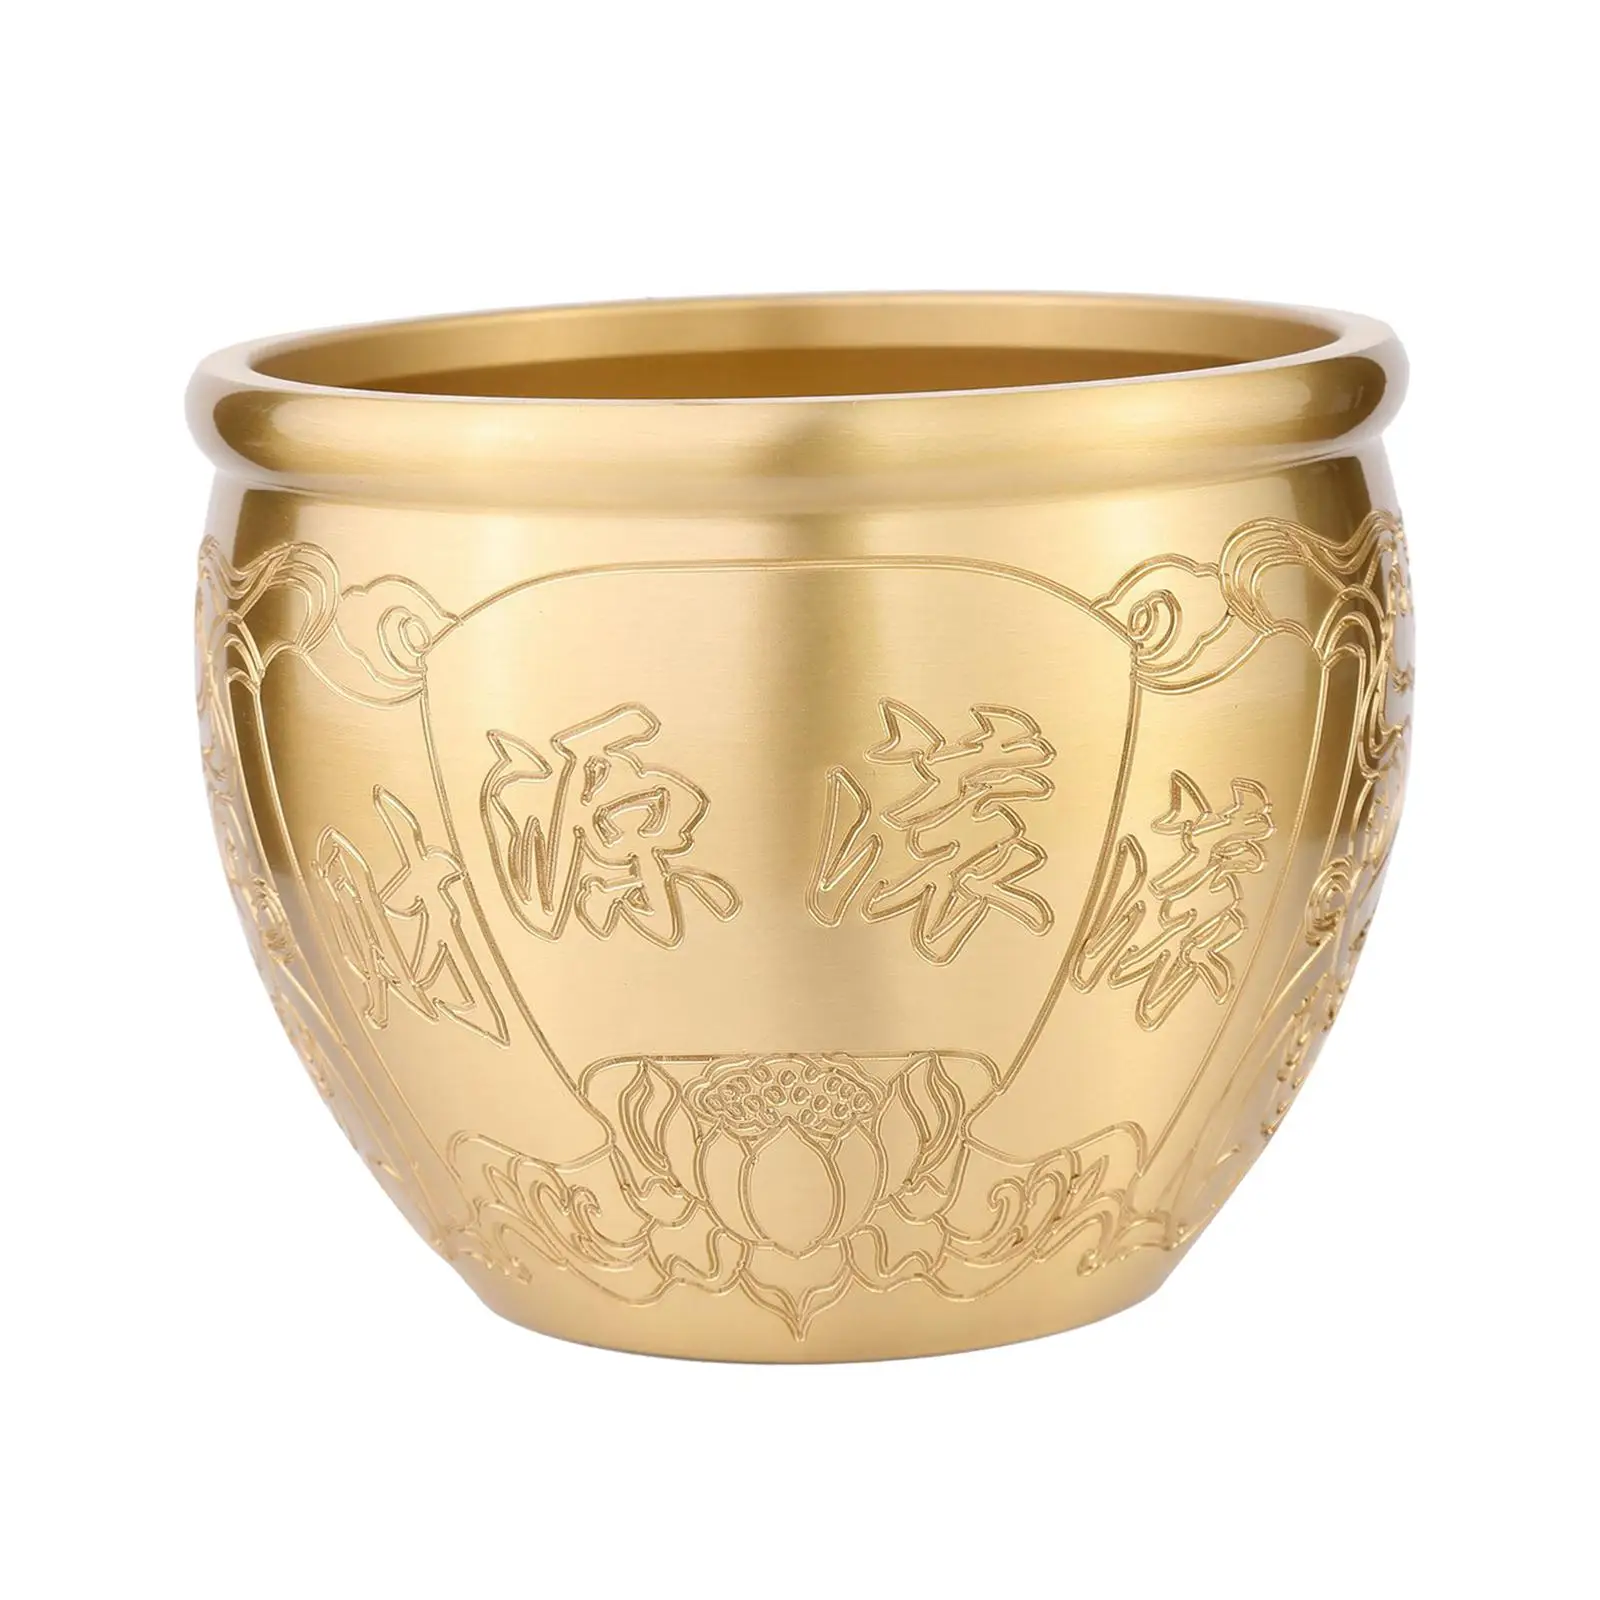 

Brass Feng Shui Bowl Planter Vase Money Bank Fortune Cylinder Key Storage Treasure Basin for Office Bedroom Party Desktop Decor